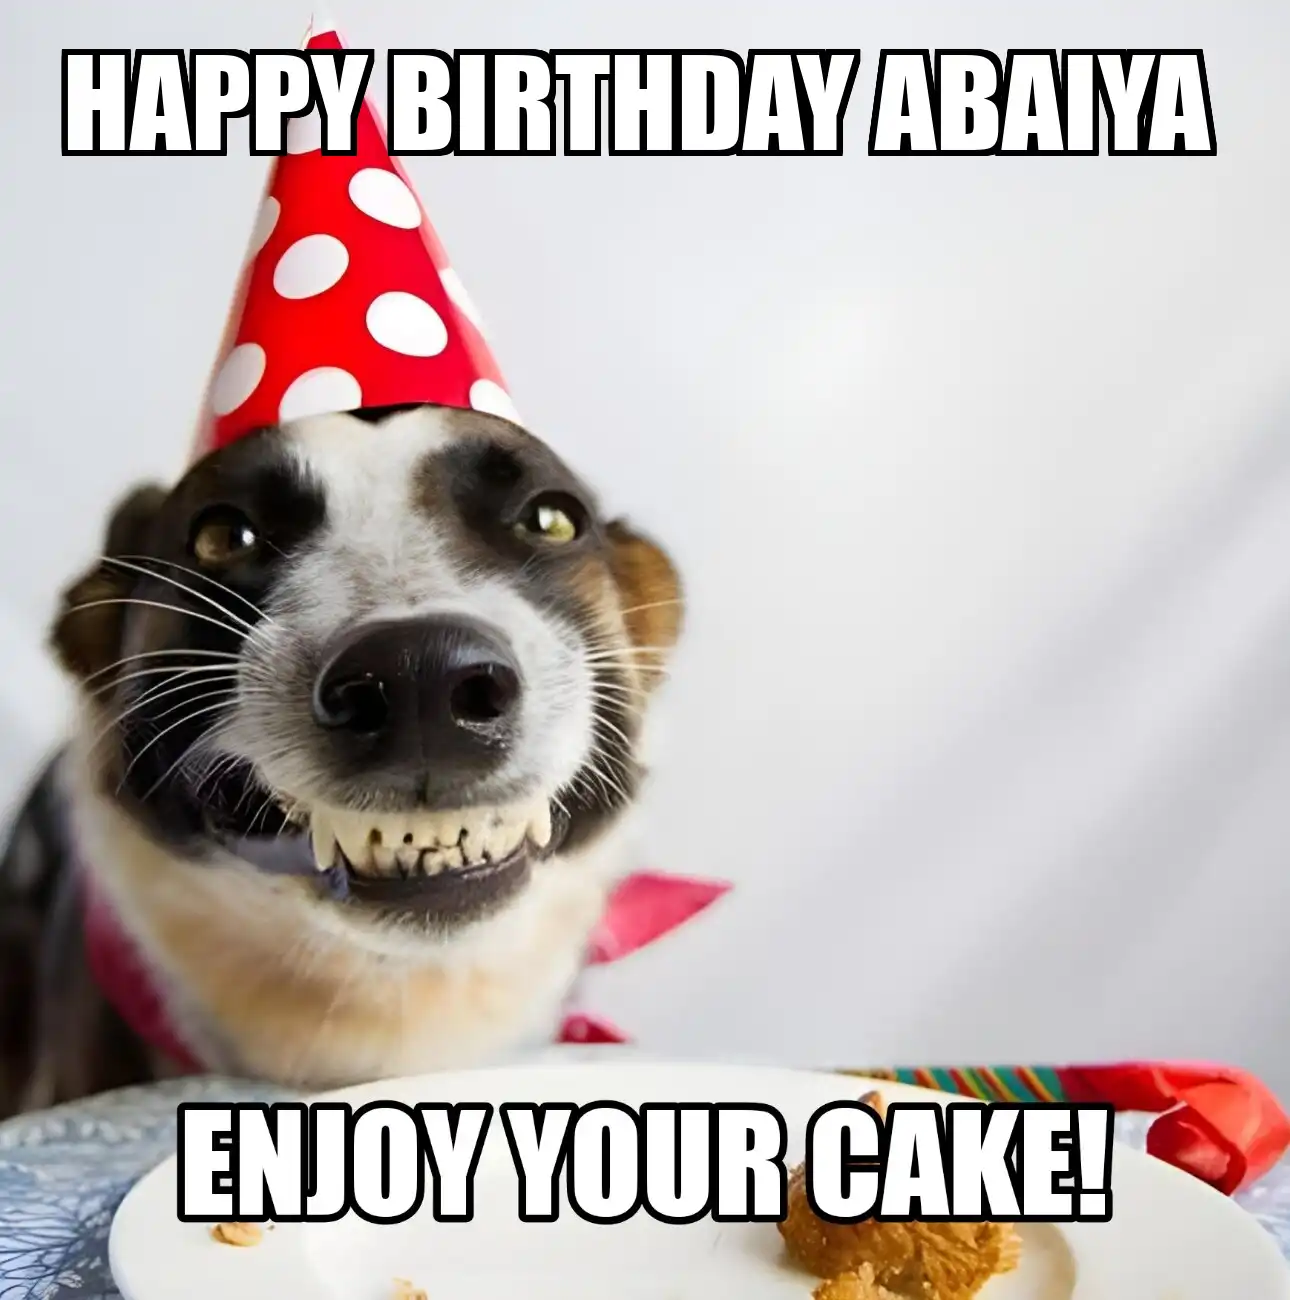 Happy Birthday Abaiya Enjoy Your Cake Dog Meme